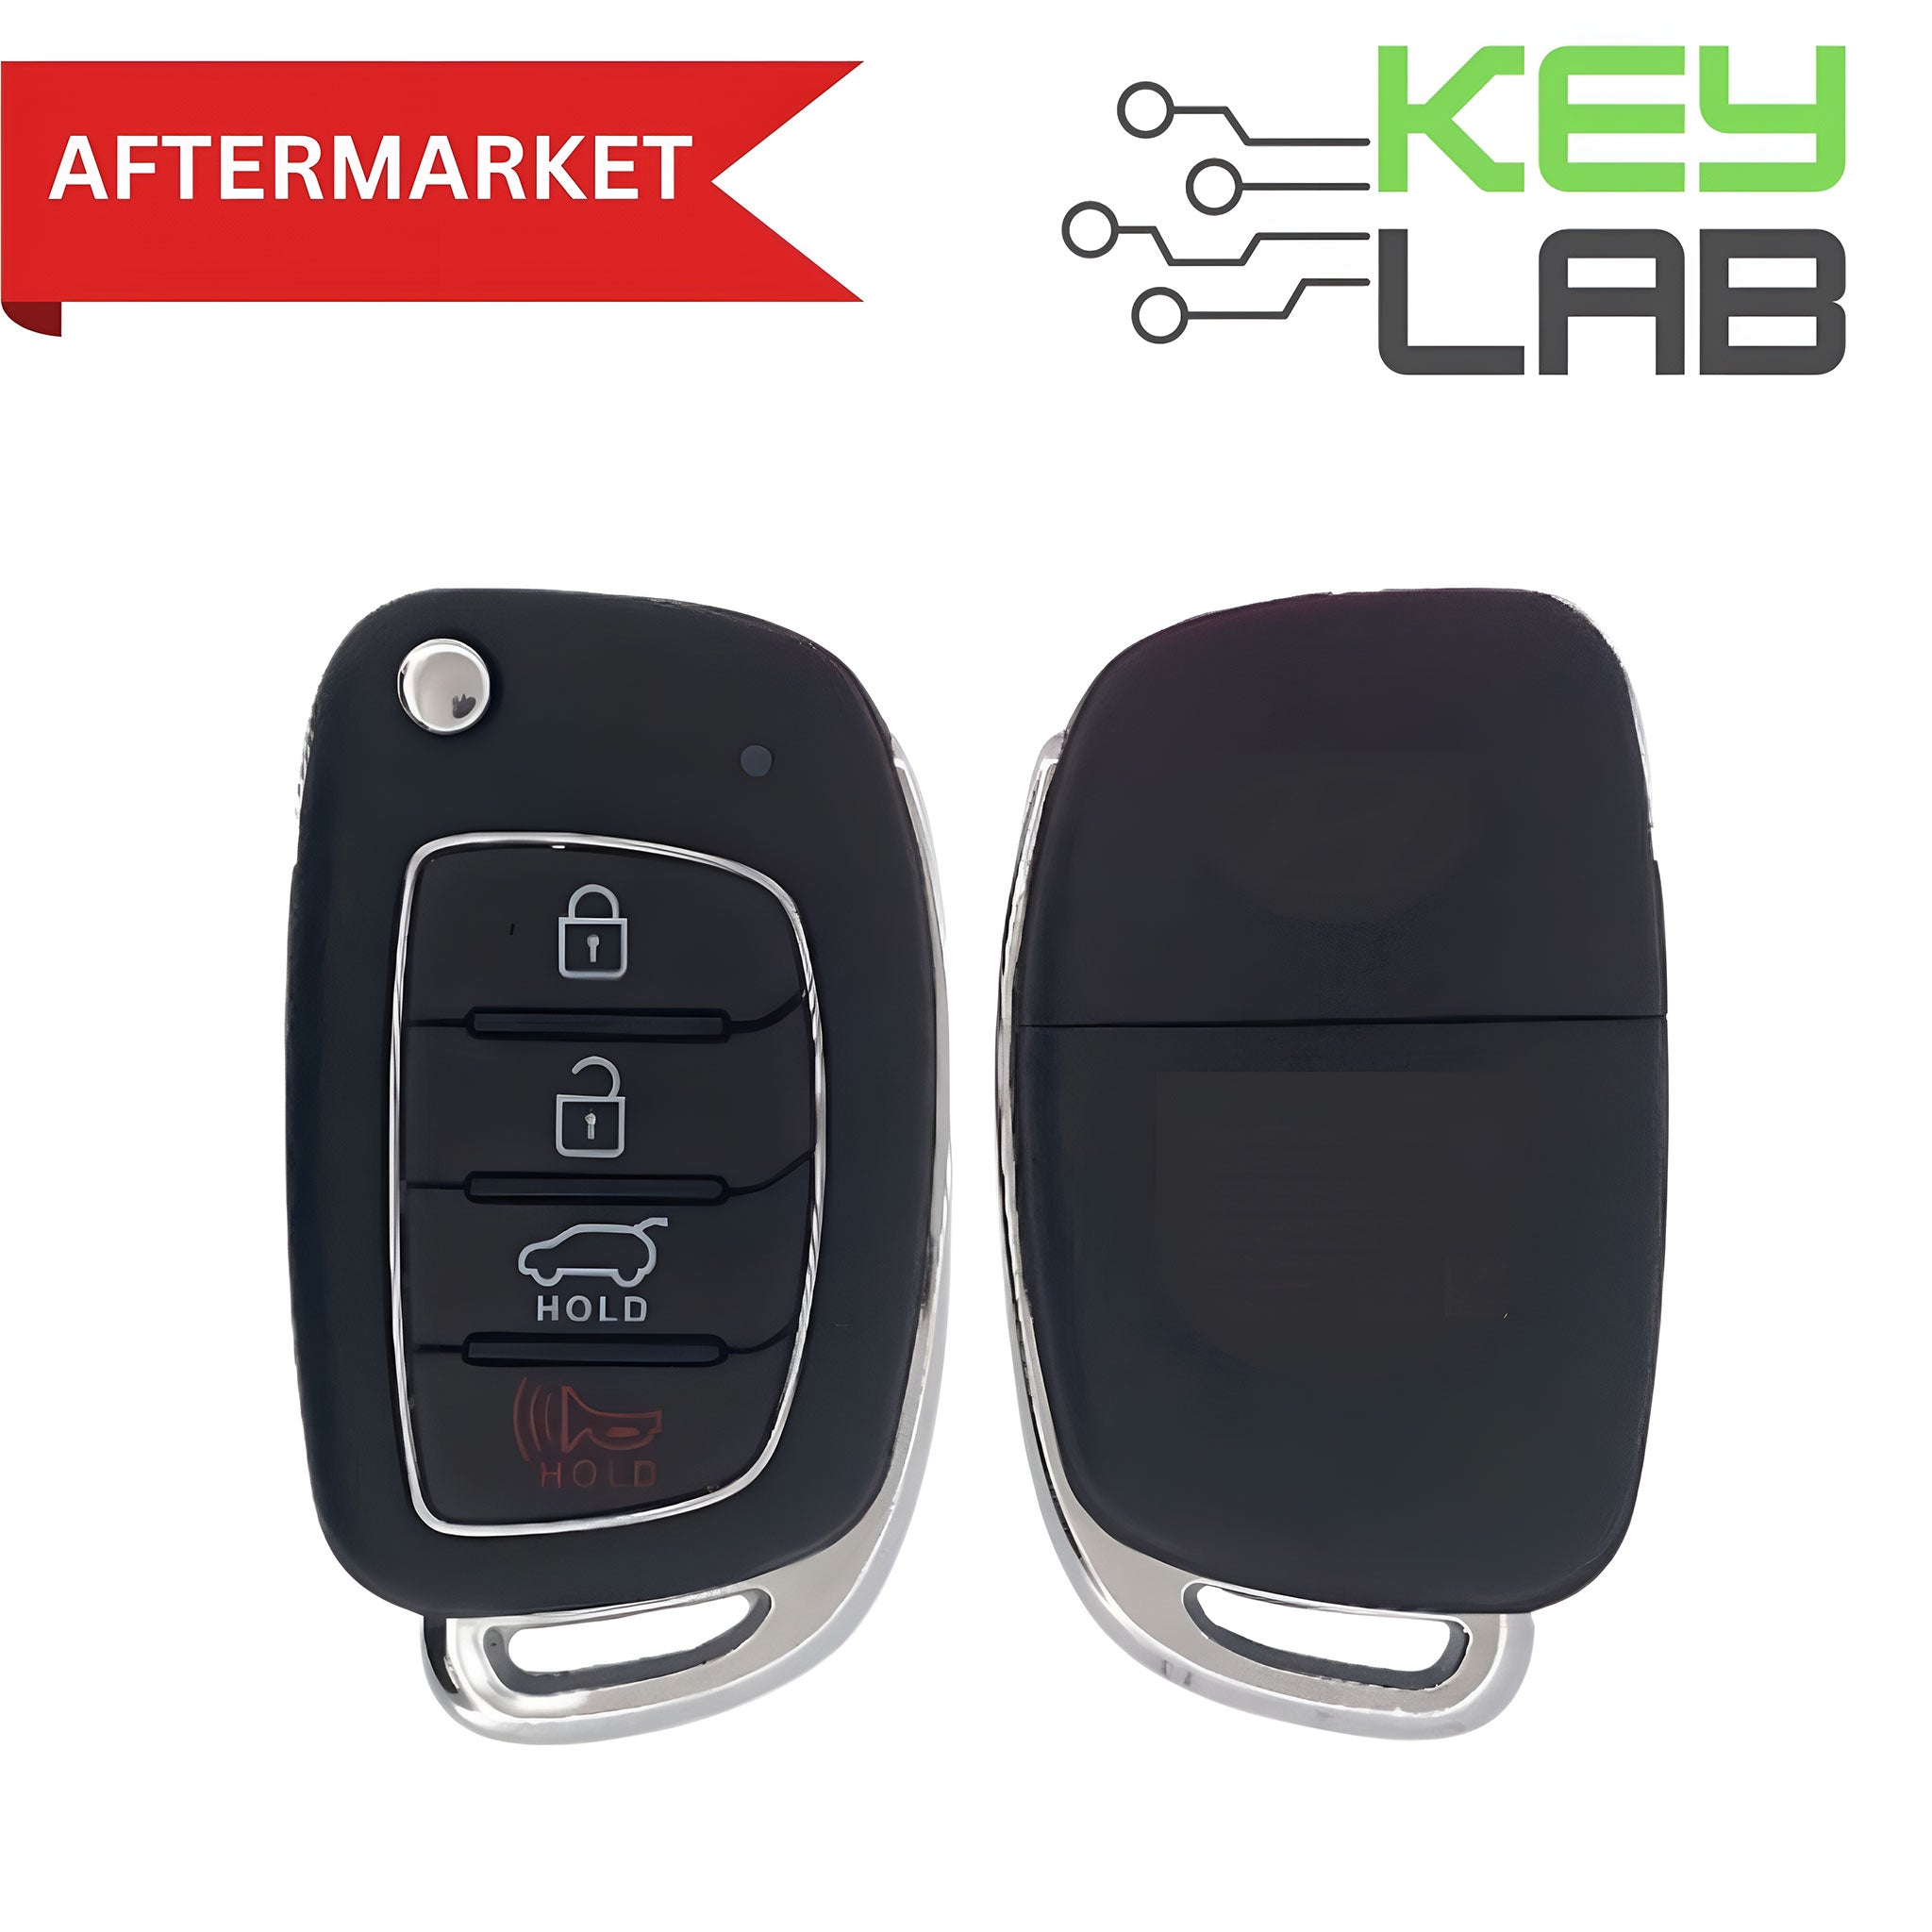 Hyundai Aftermarket 2013-2016 Santa Fe Remote Flip Key 4B Hatch FCCID: TQ8-RKE-3F04 PN# 95430-4Z100 - Royal Key Supply